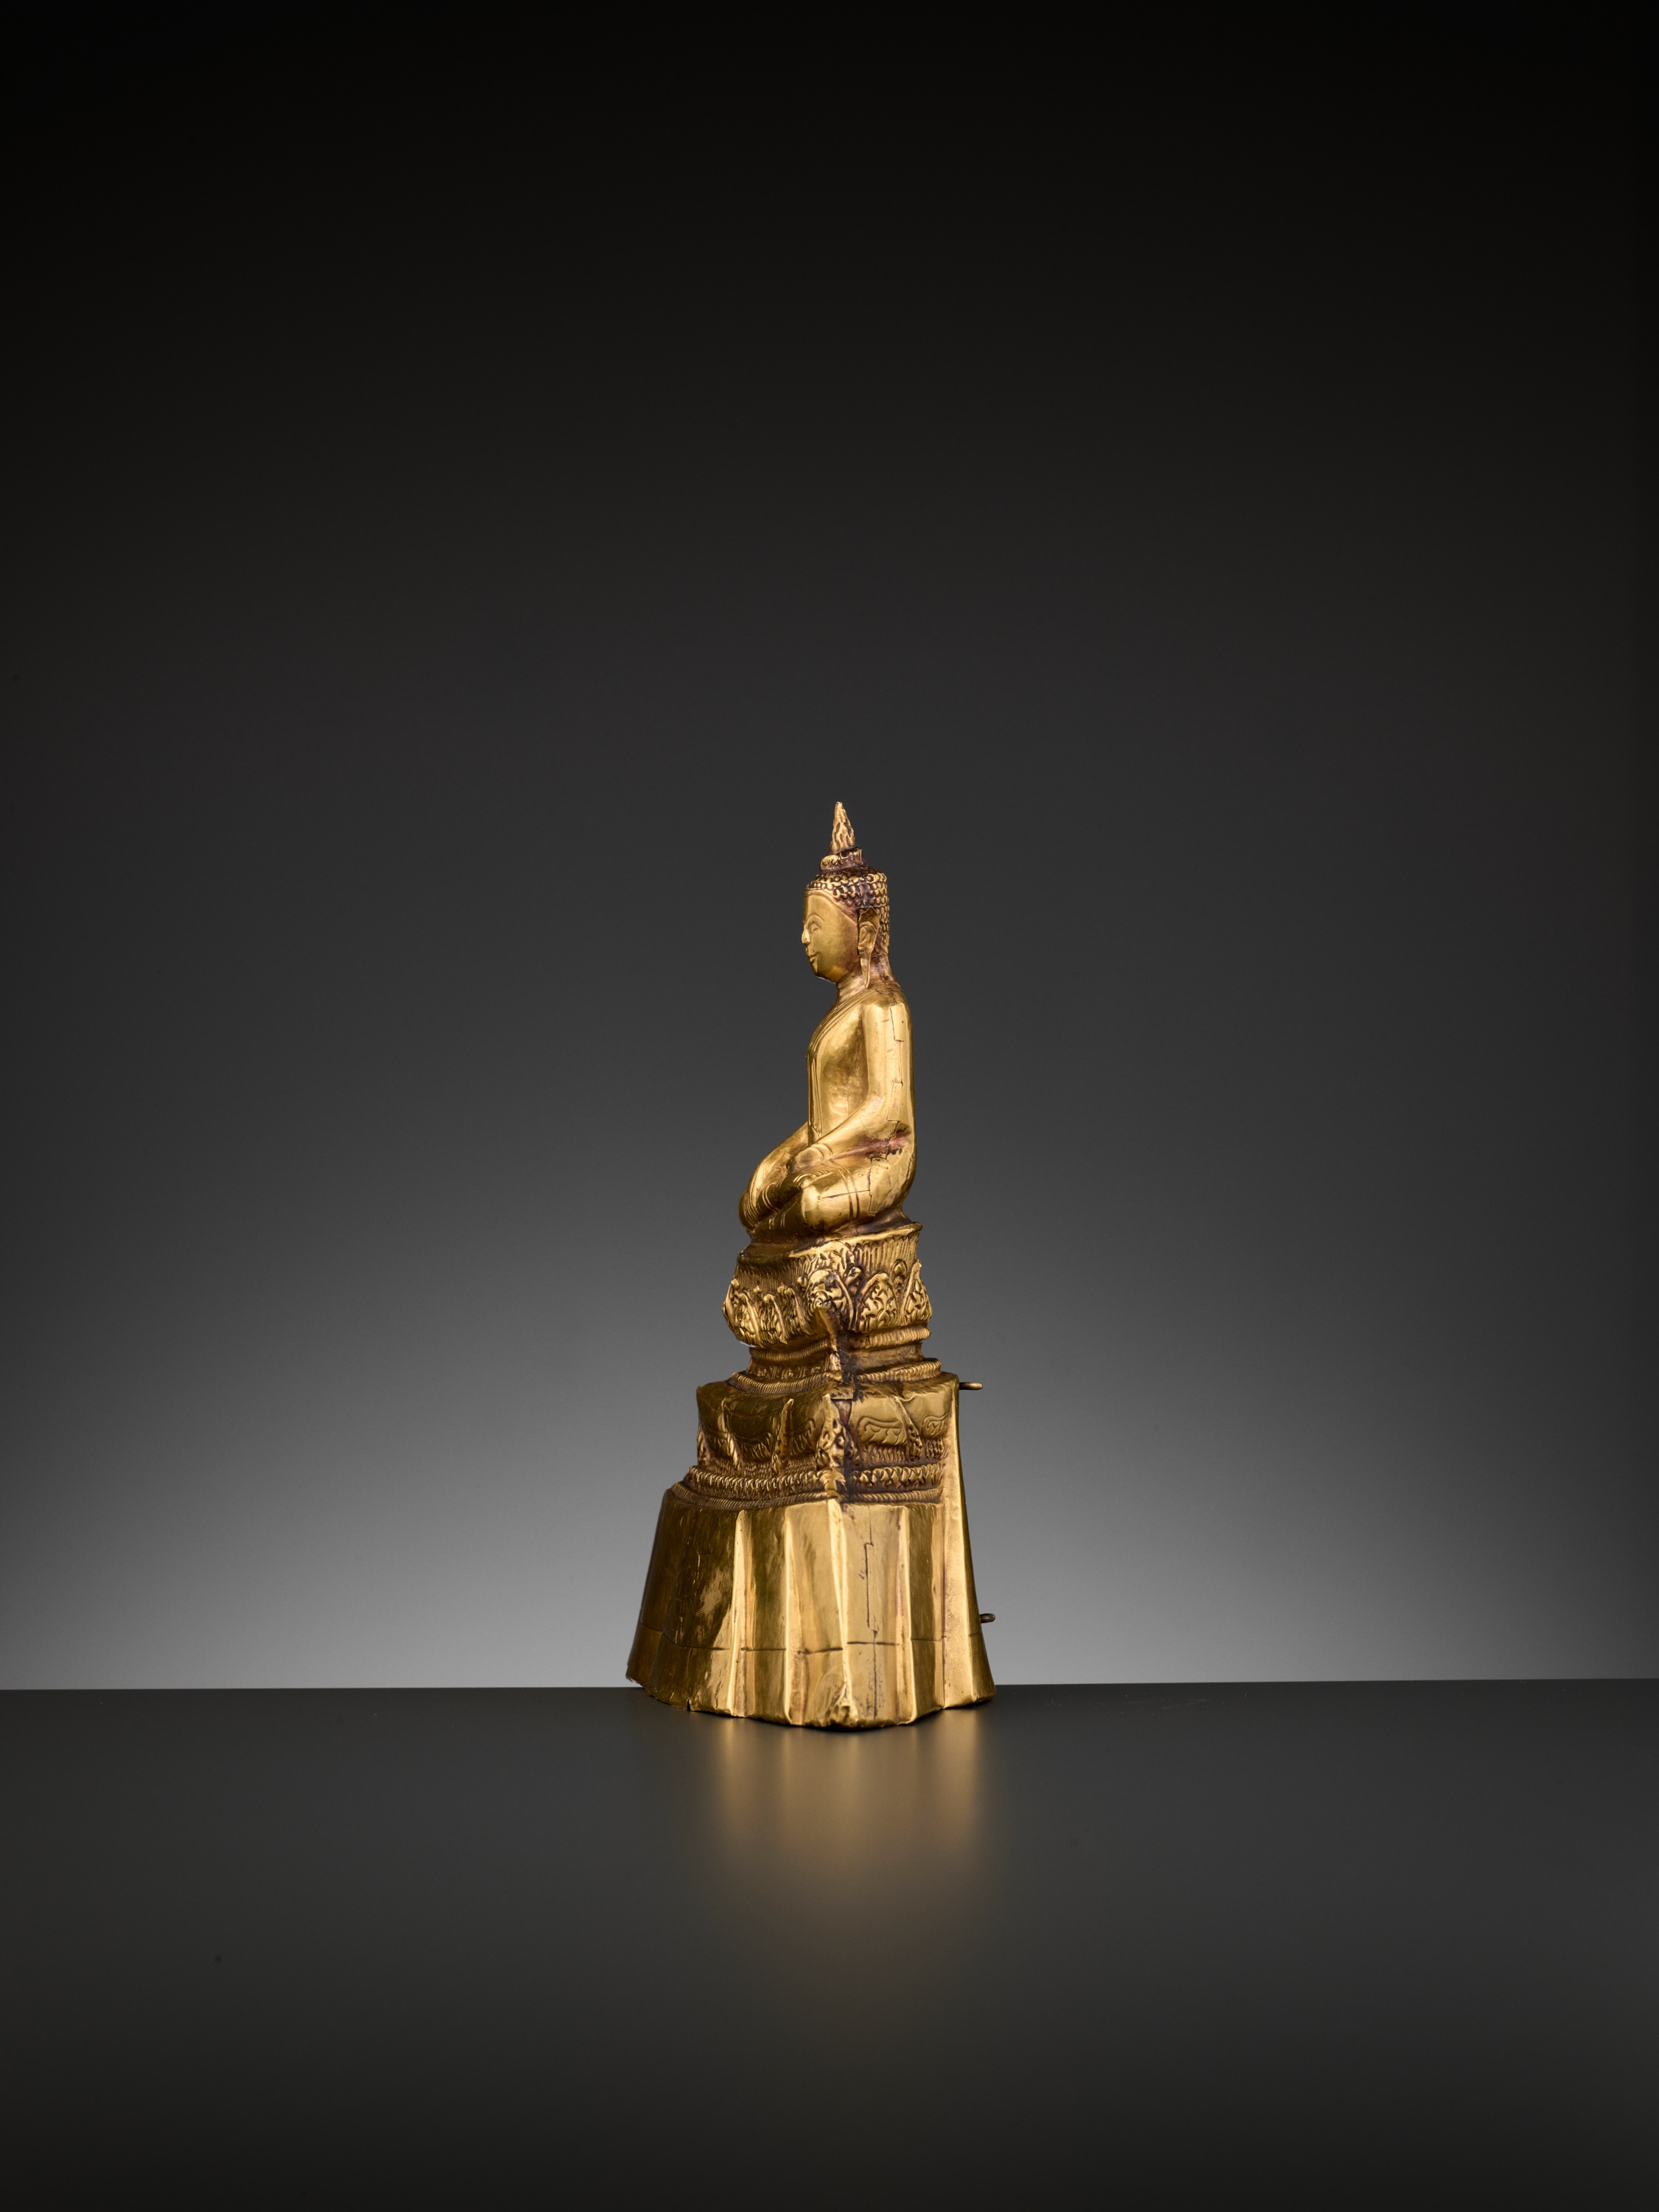 A 24-CARAT GOLD REPOUSSE FIGURE OF BUDDHA SHAKYAMUNI, AYUTTHAYA STYLE - Image 3 of 11